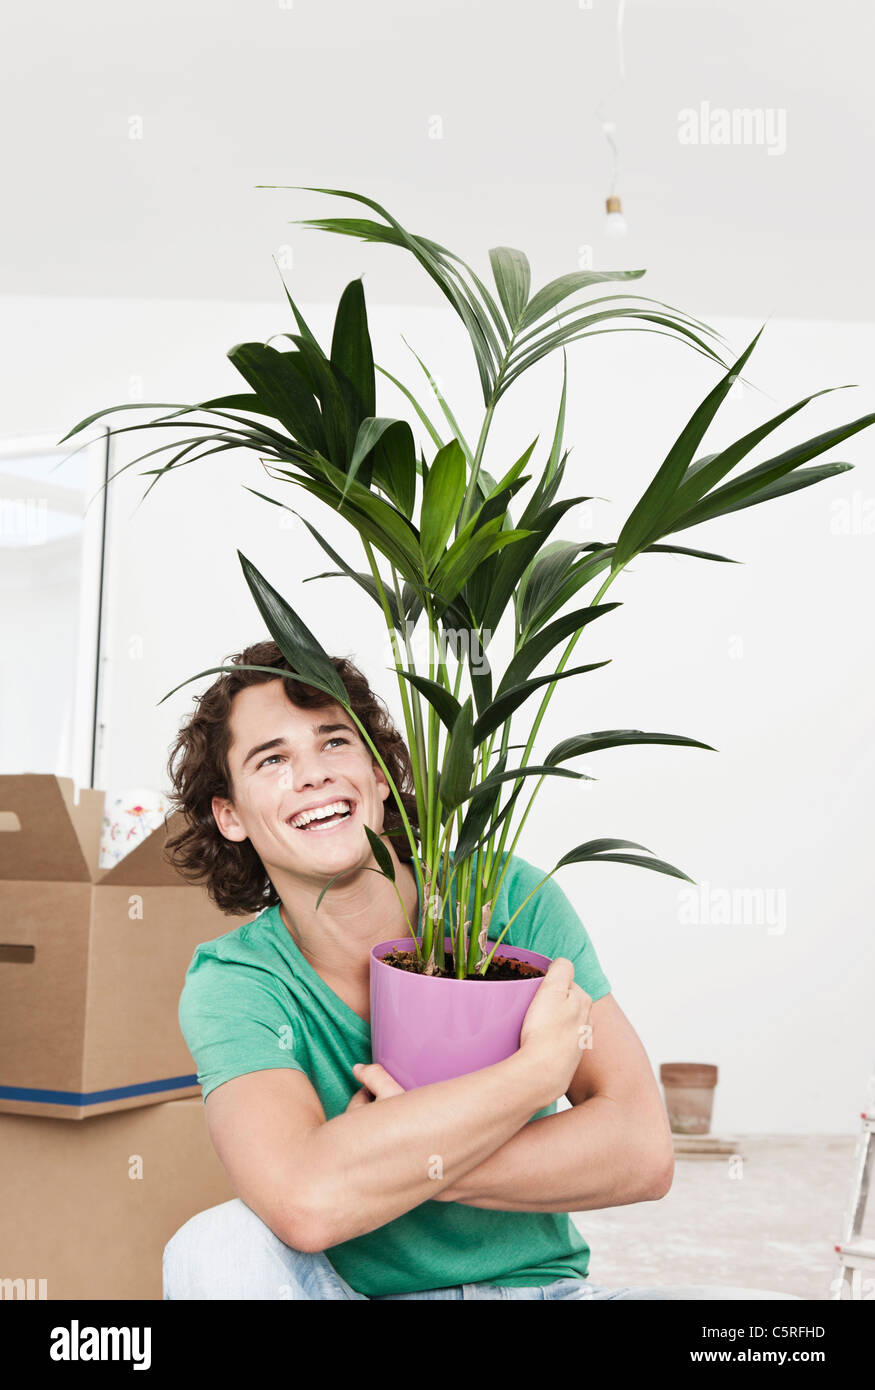 Deutschland, Köln, junger Mann hält Topfpflanze bei Renovierung Wohnung Stockfoto